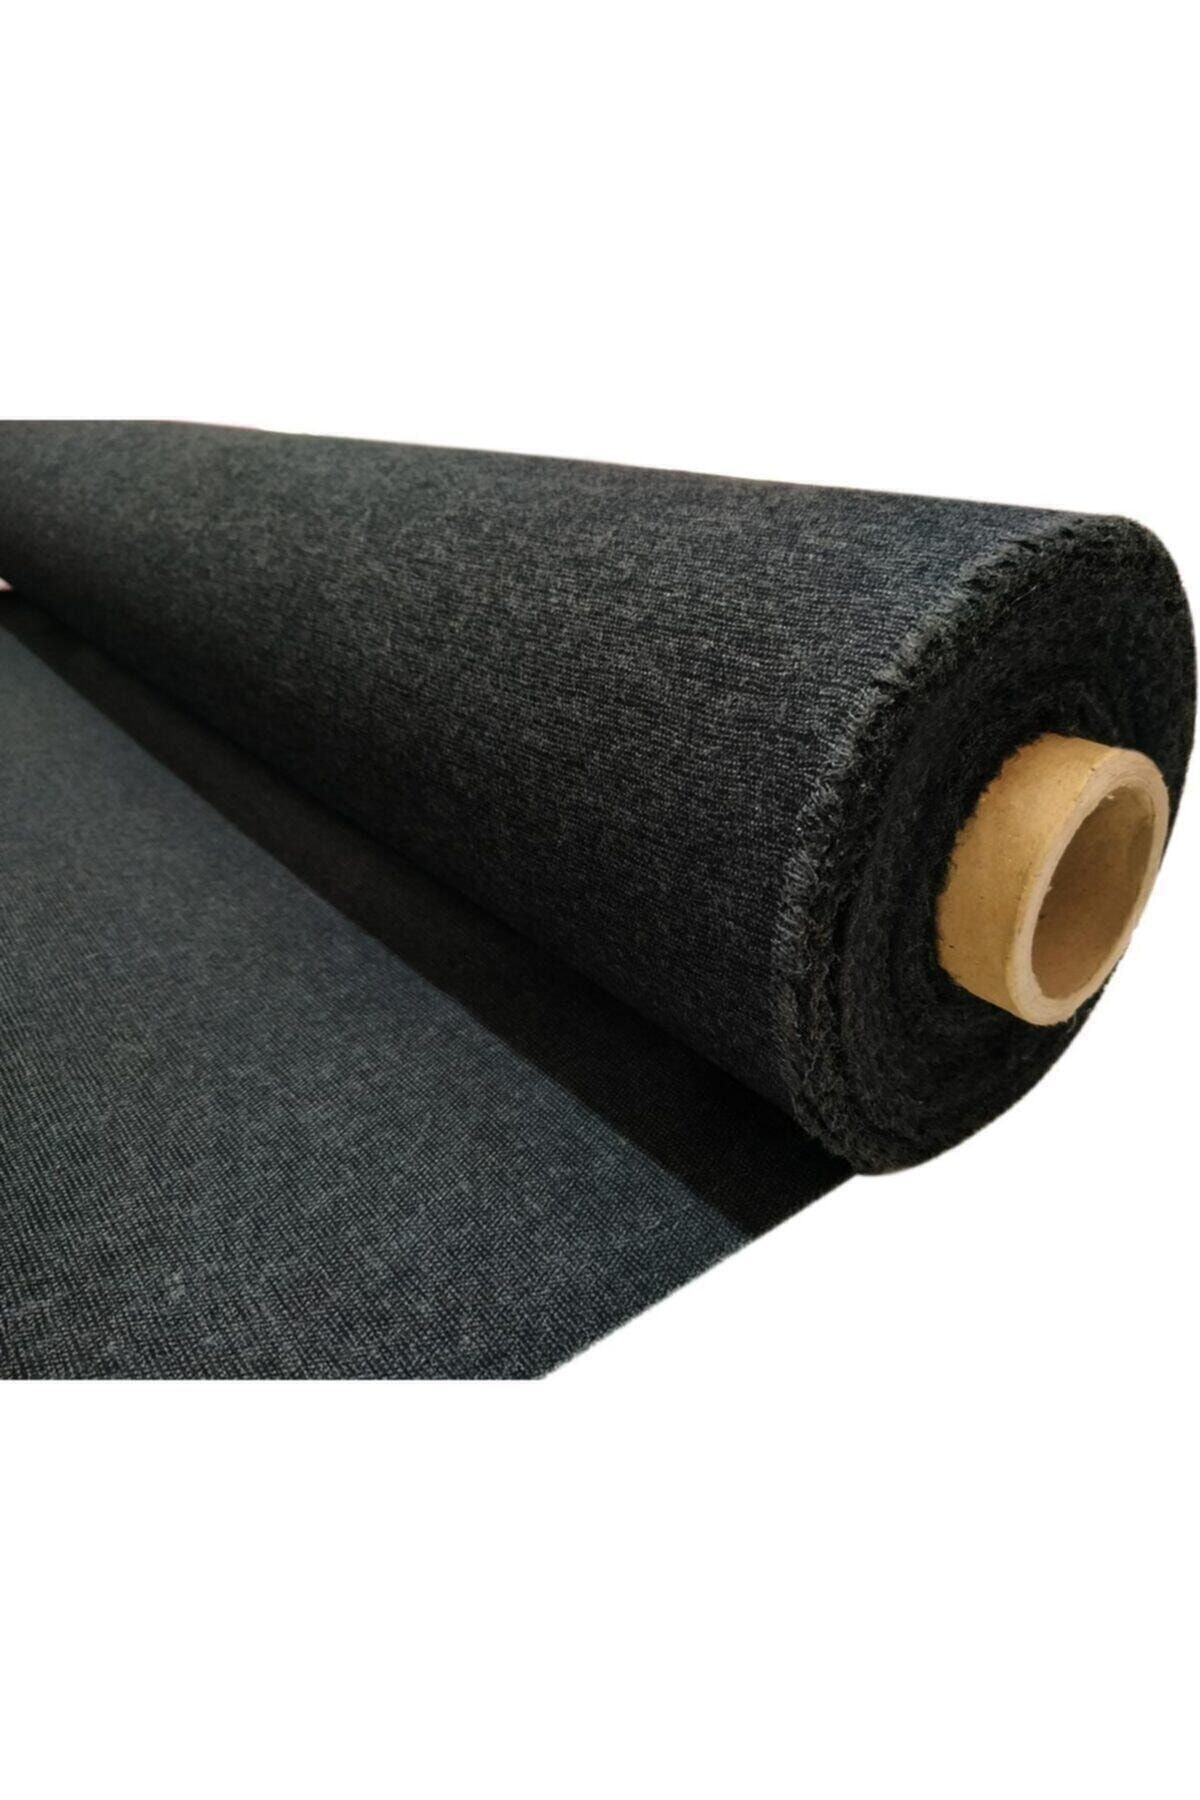 Kezban Tekstil Tek Tarafı Yapışkanlı Bez Tela Siyah Yapışkan 1 Metre 95 Cm * 100 Cm